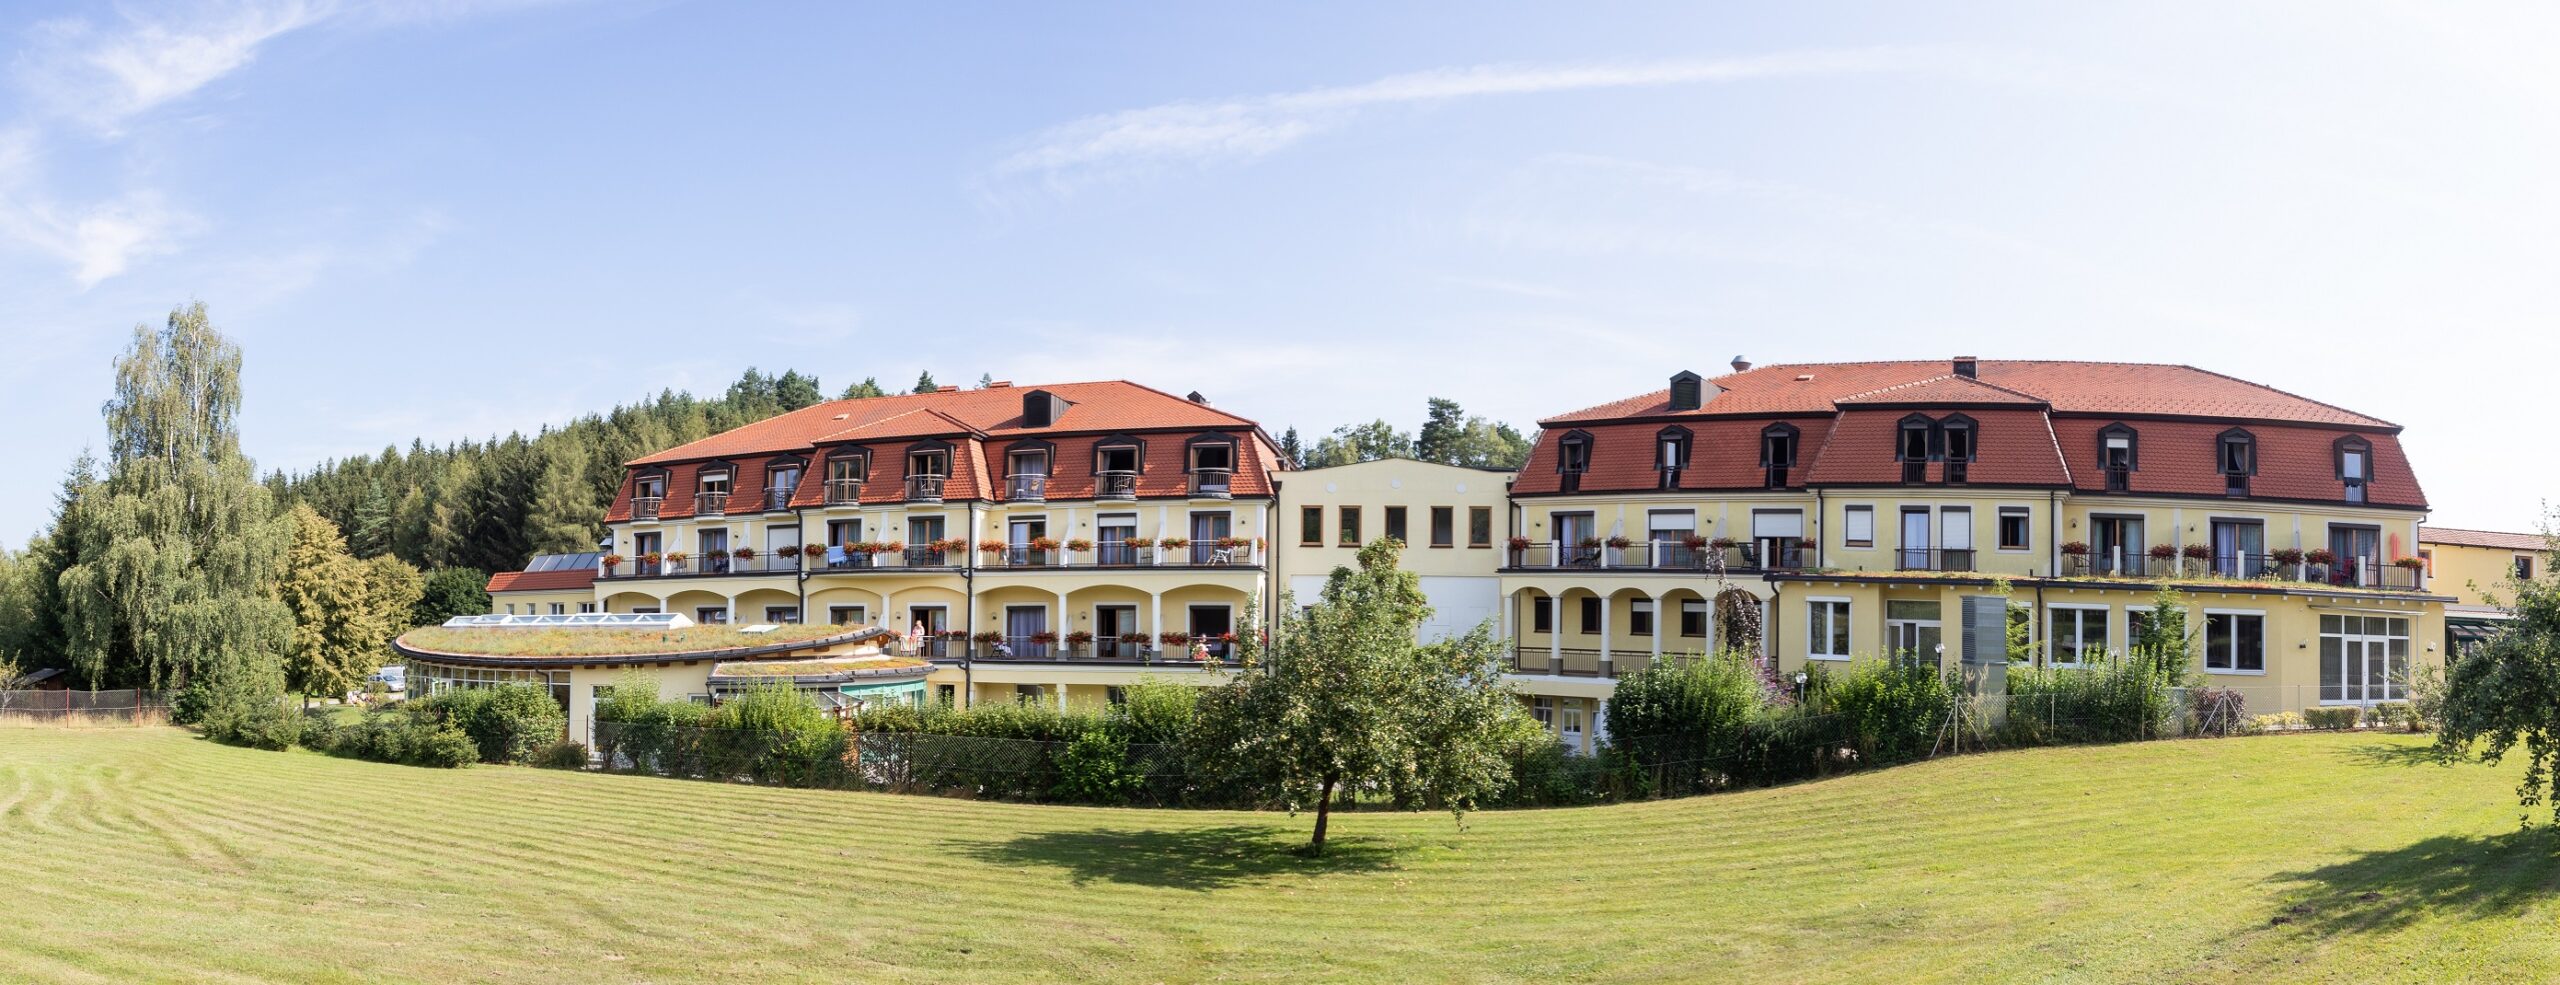 Kurguide: Kurhotel Moorbad Bad Großpertholz Haus_7